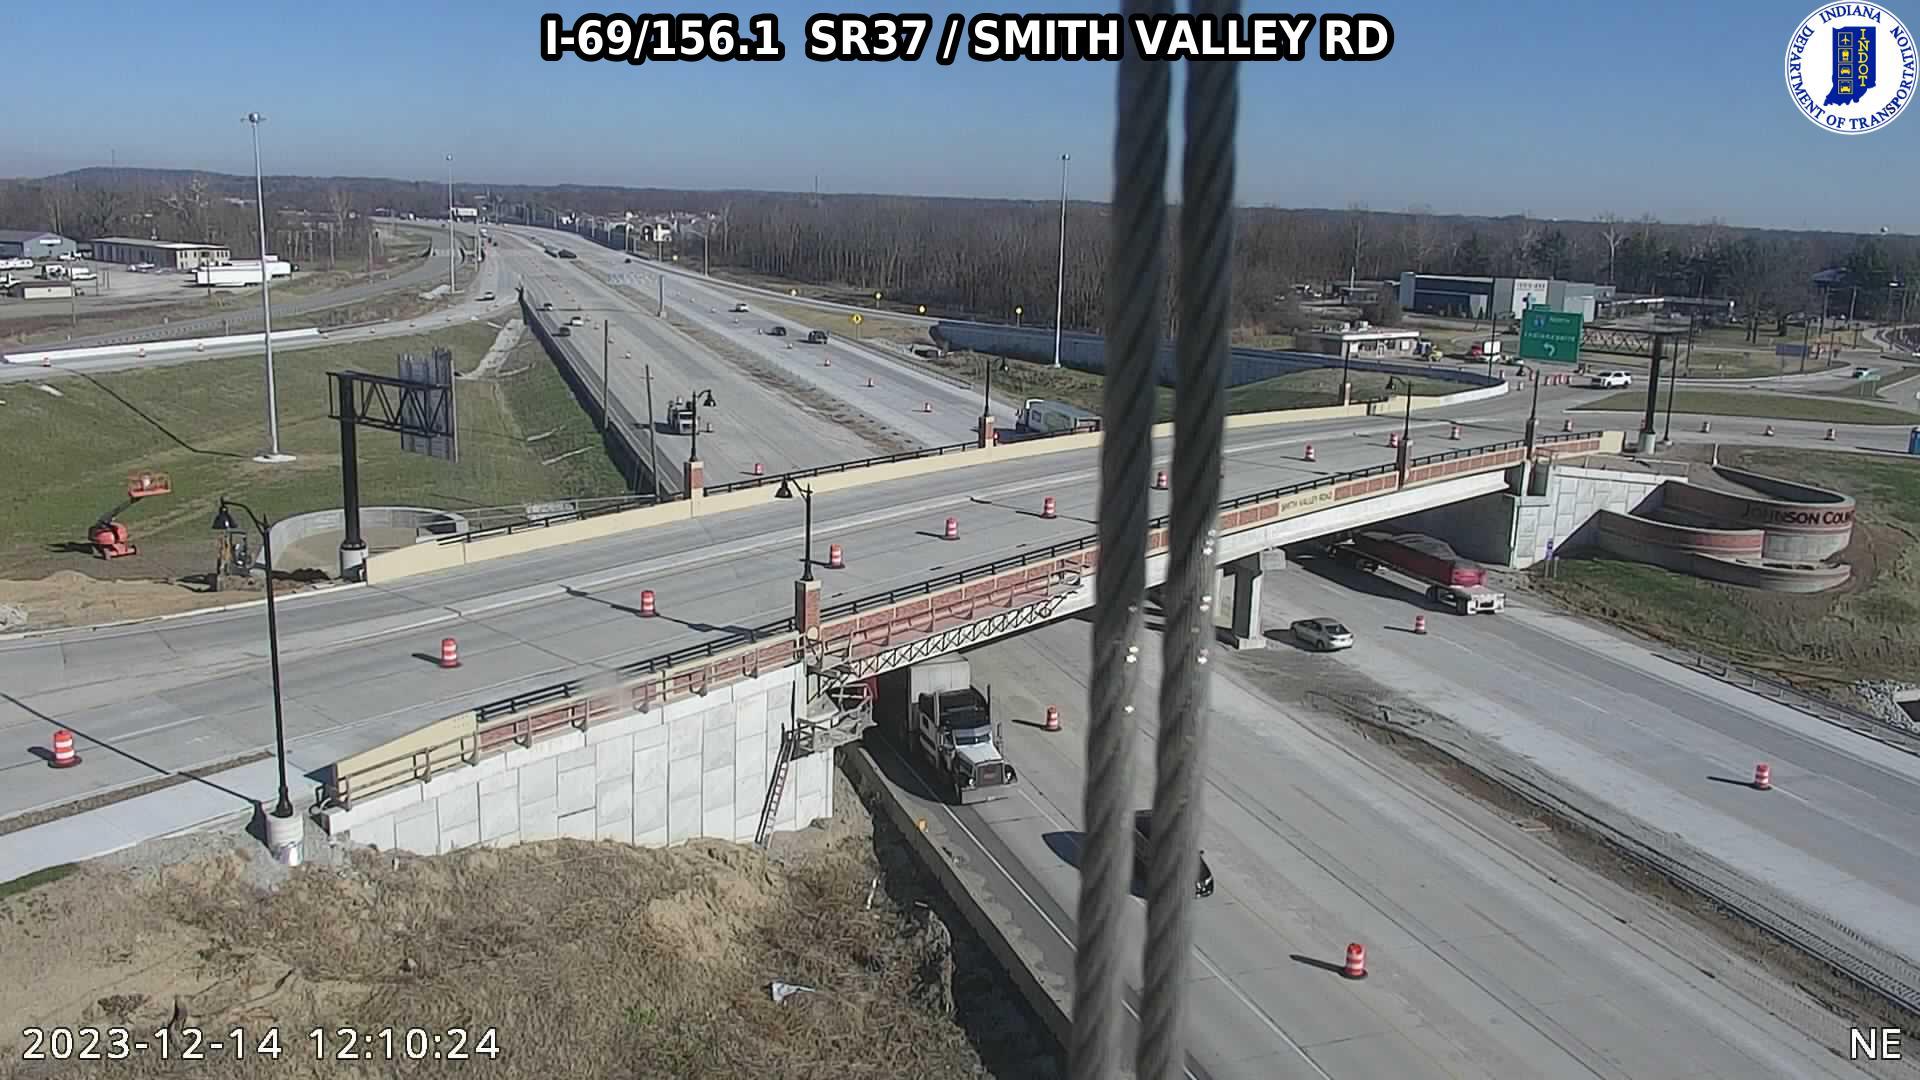 Smith Valley: I-69: I-69/156.1 SR37 - RD: I-69/156.1 SR37 - RD Traffic Camera